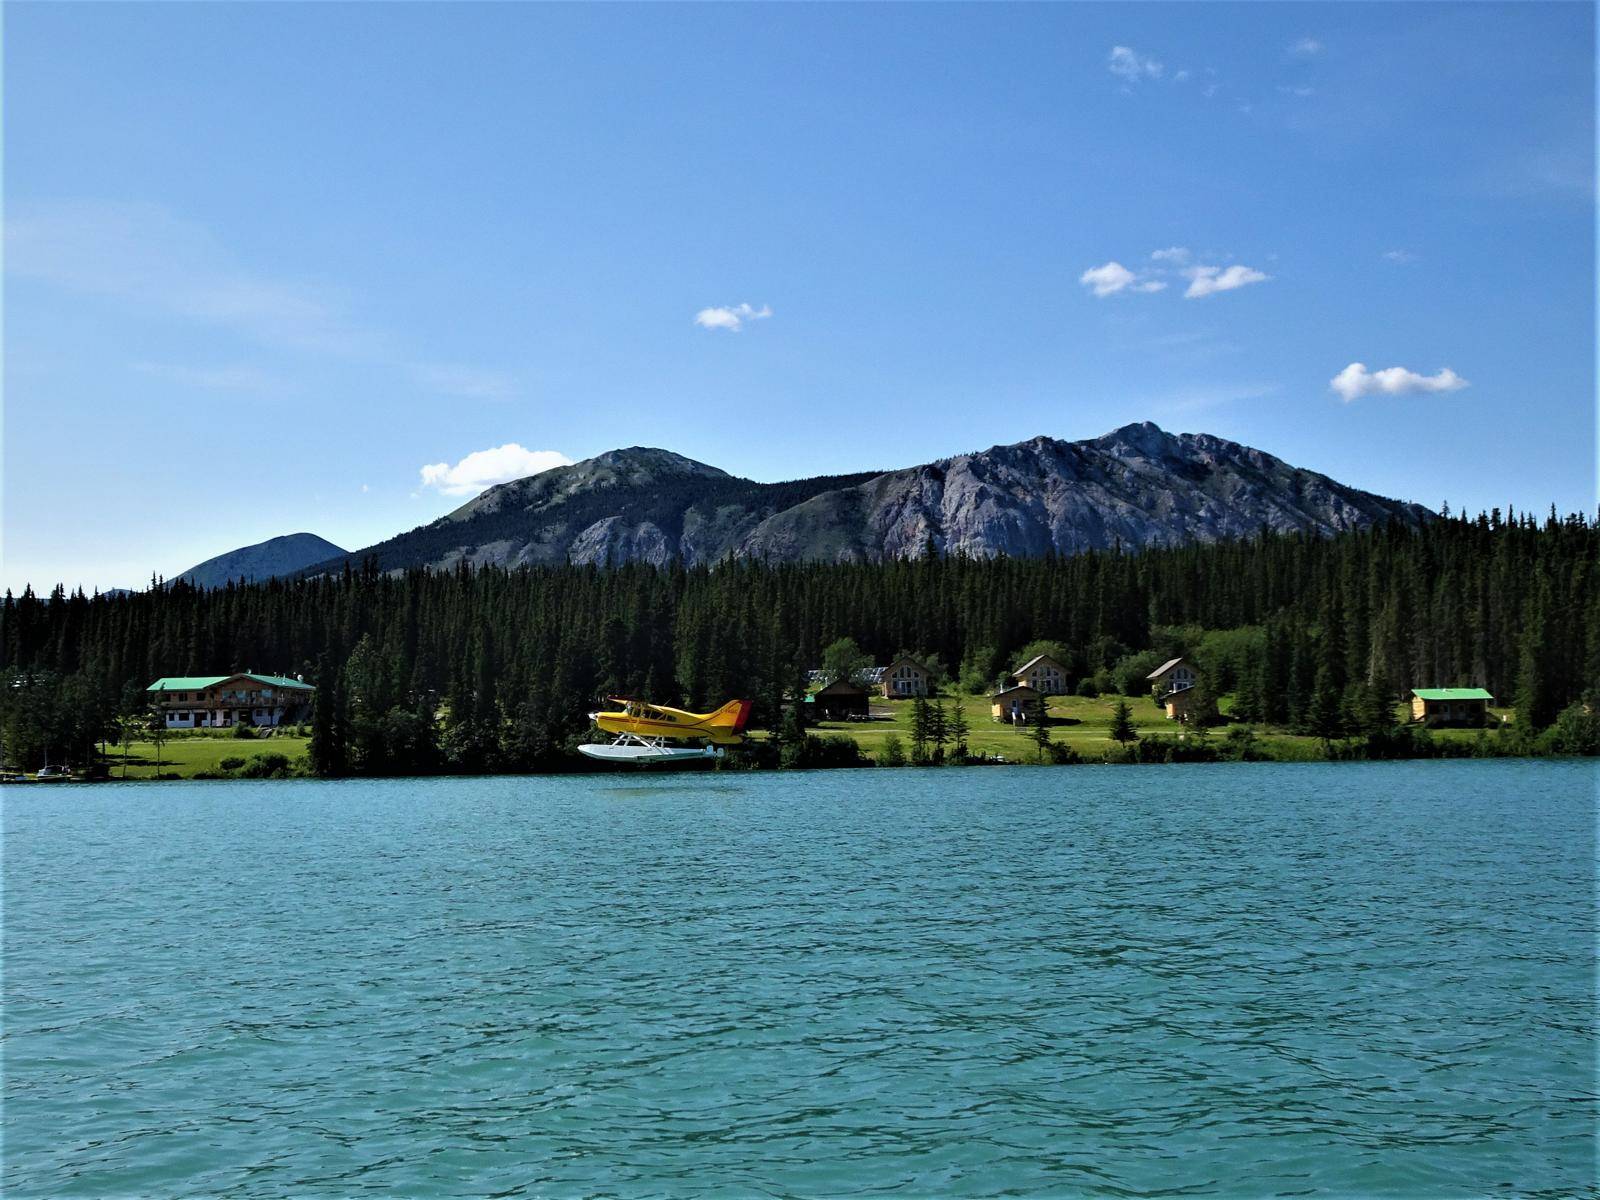 view from lake to resort, floatplane on lake